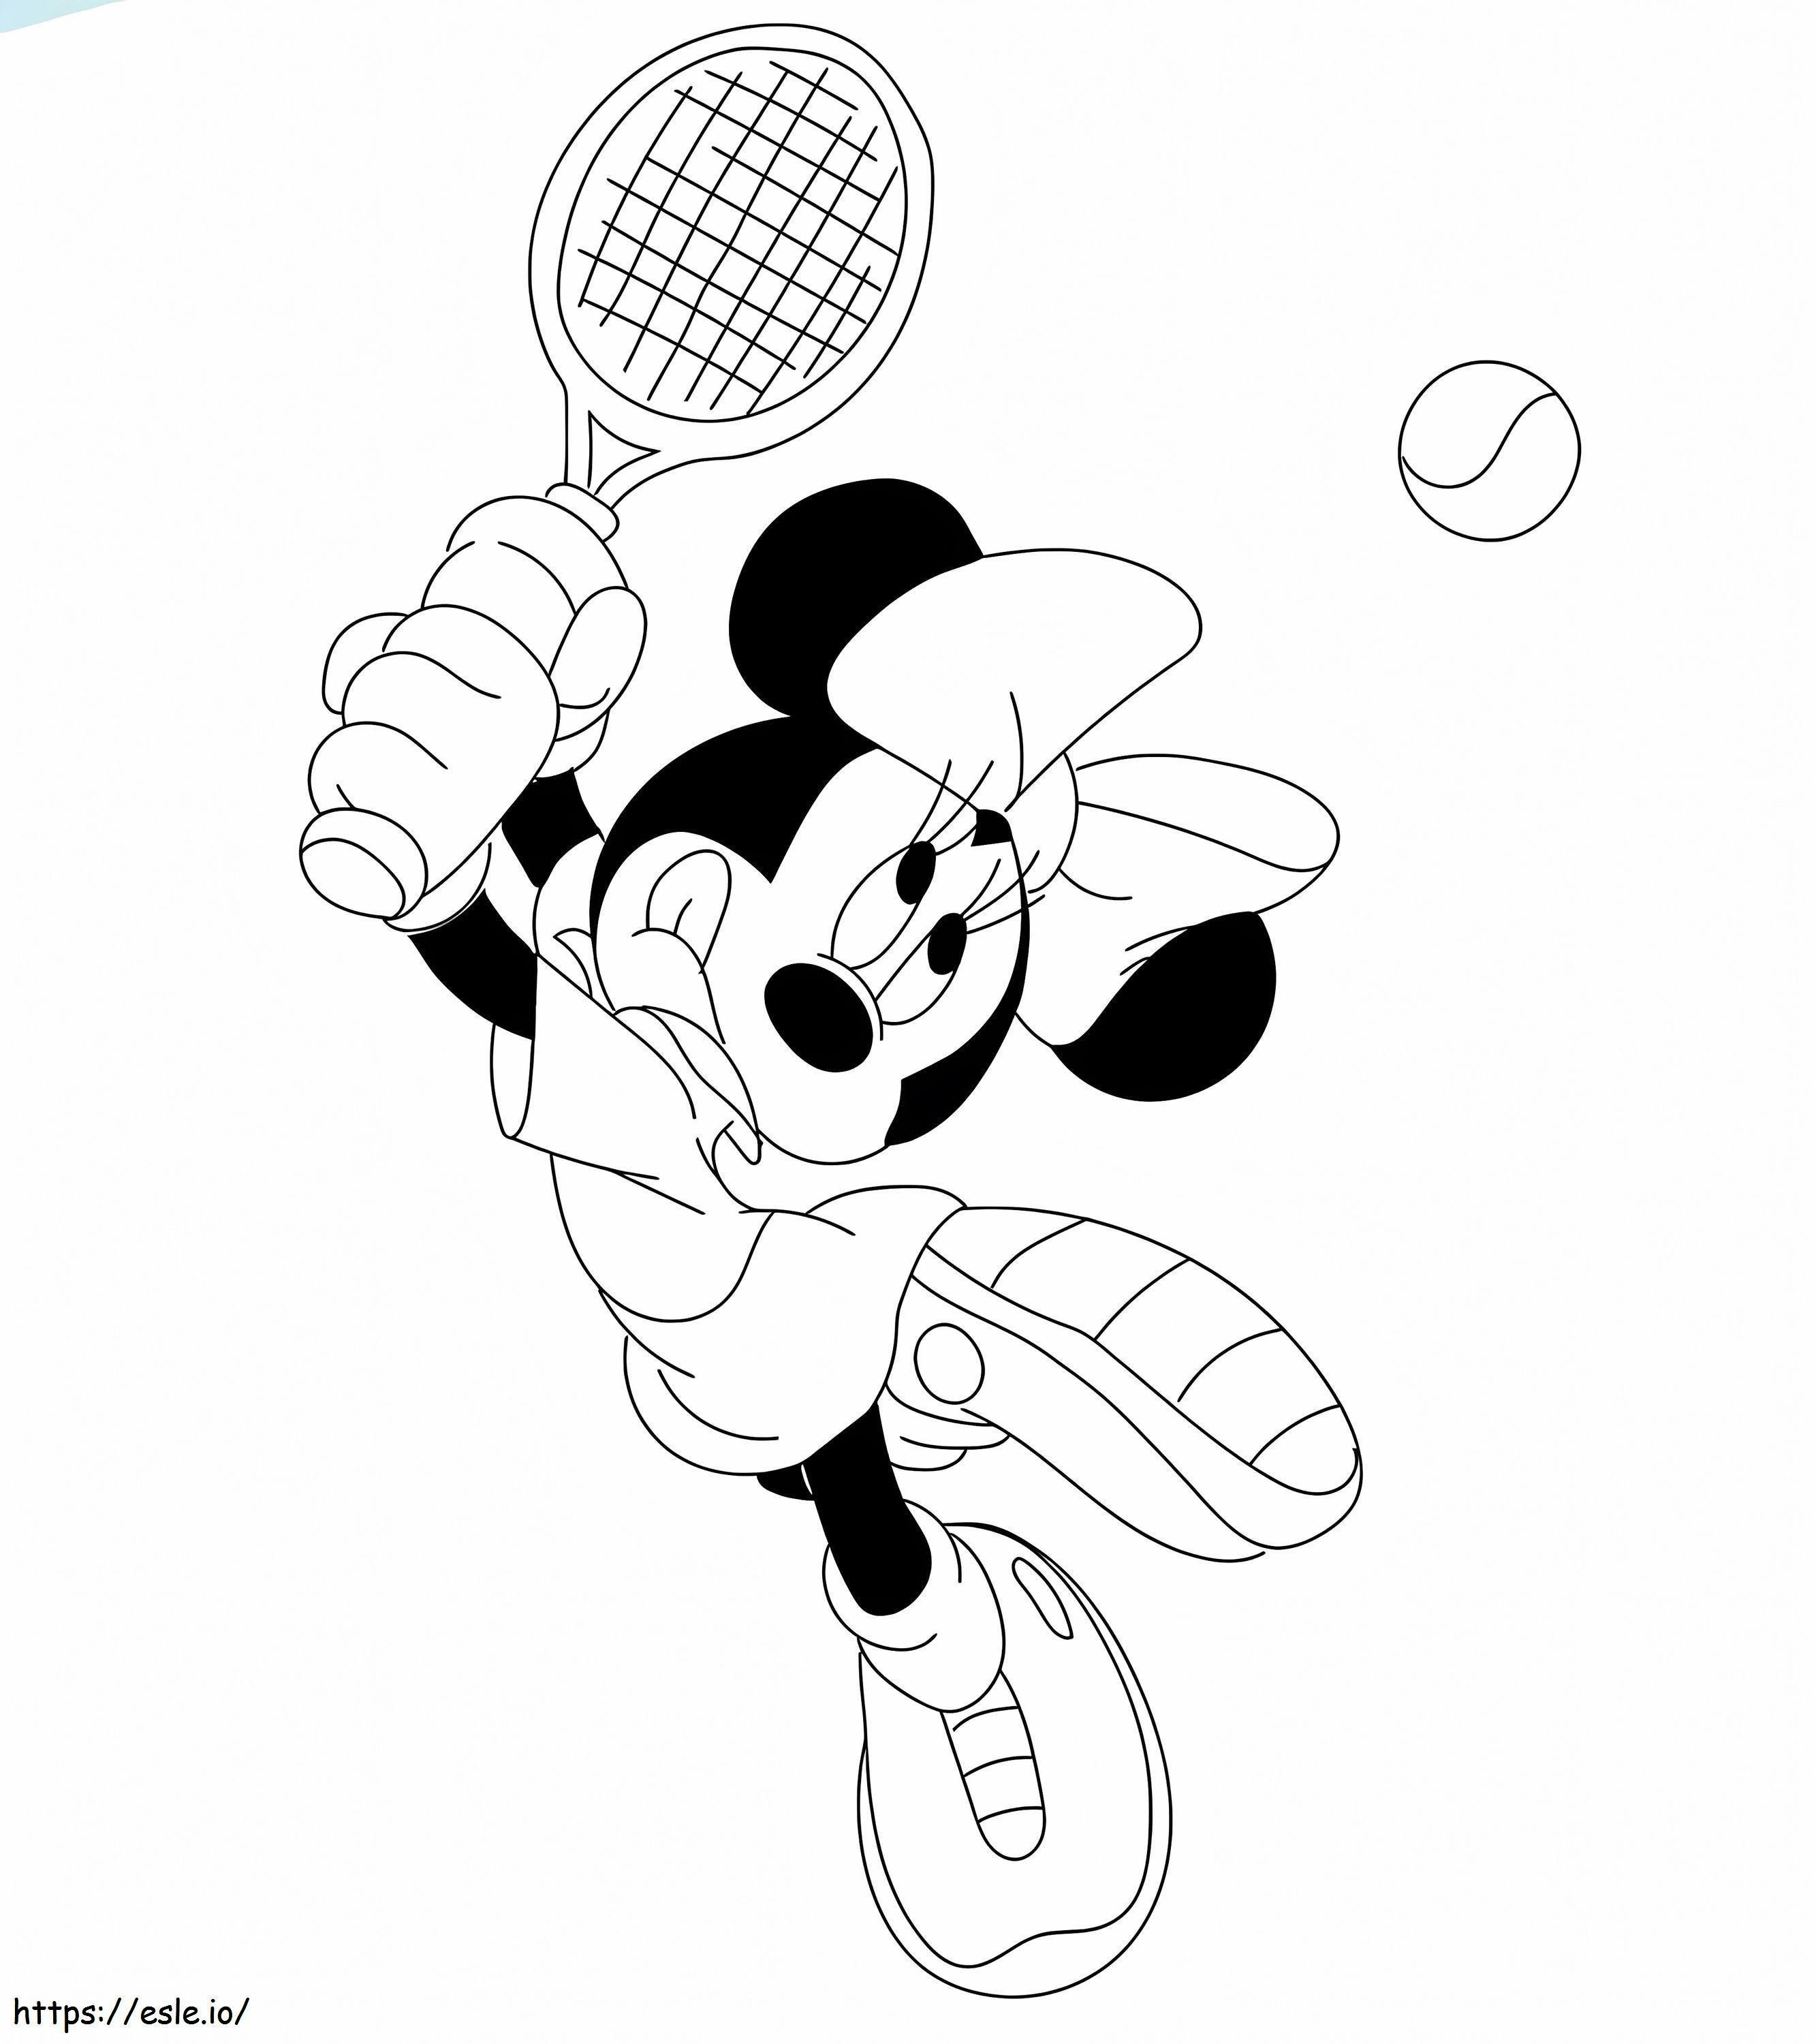 Minnie gioca a tennis da colorare